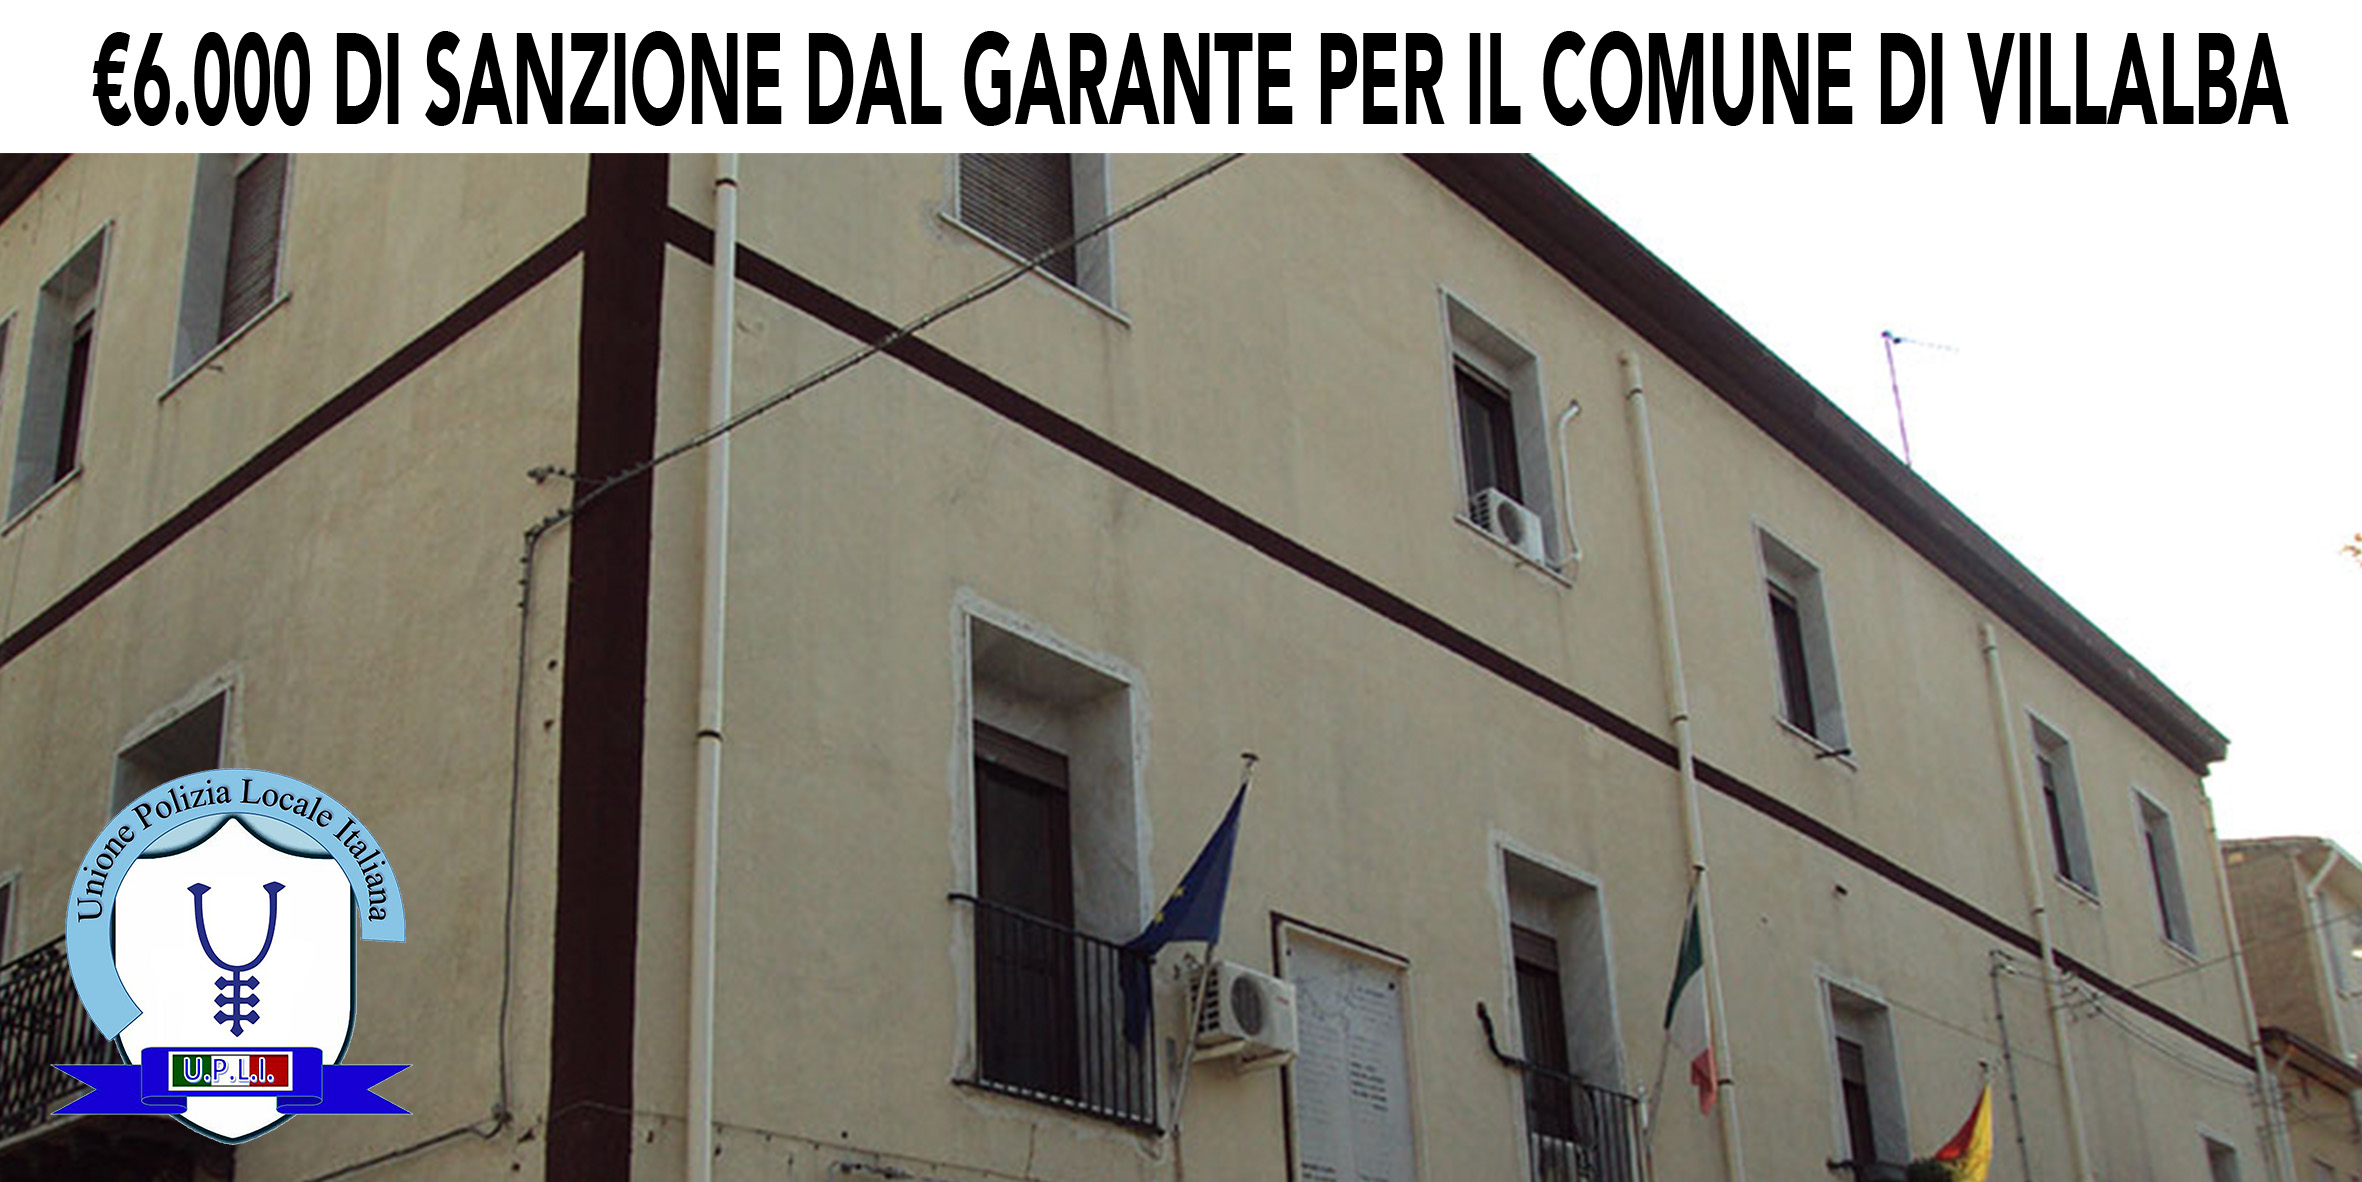 6.000 EURO DI SANZIONE DAL GARANTE AL COMUNE DI VILLABATE (PA), Massimiliano Mancini